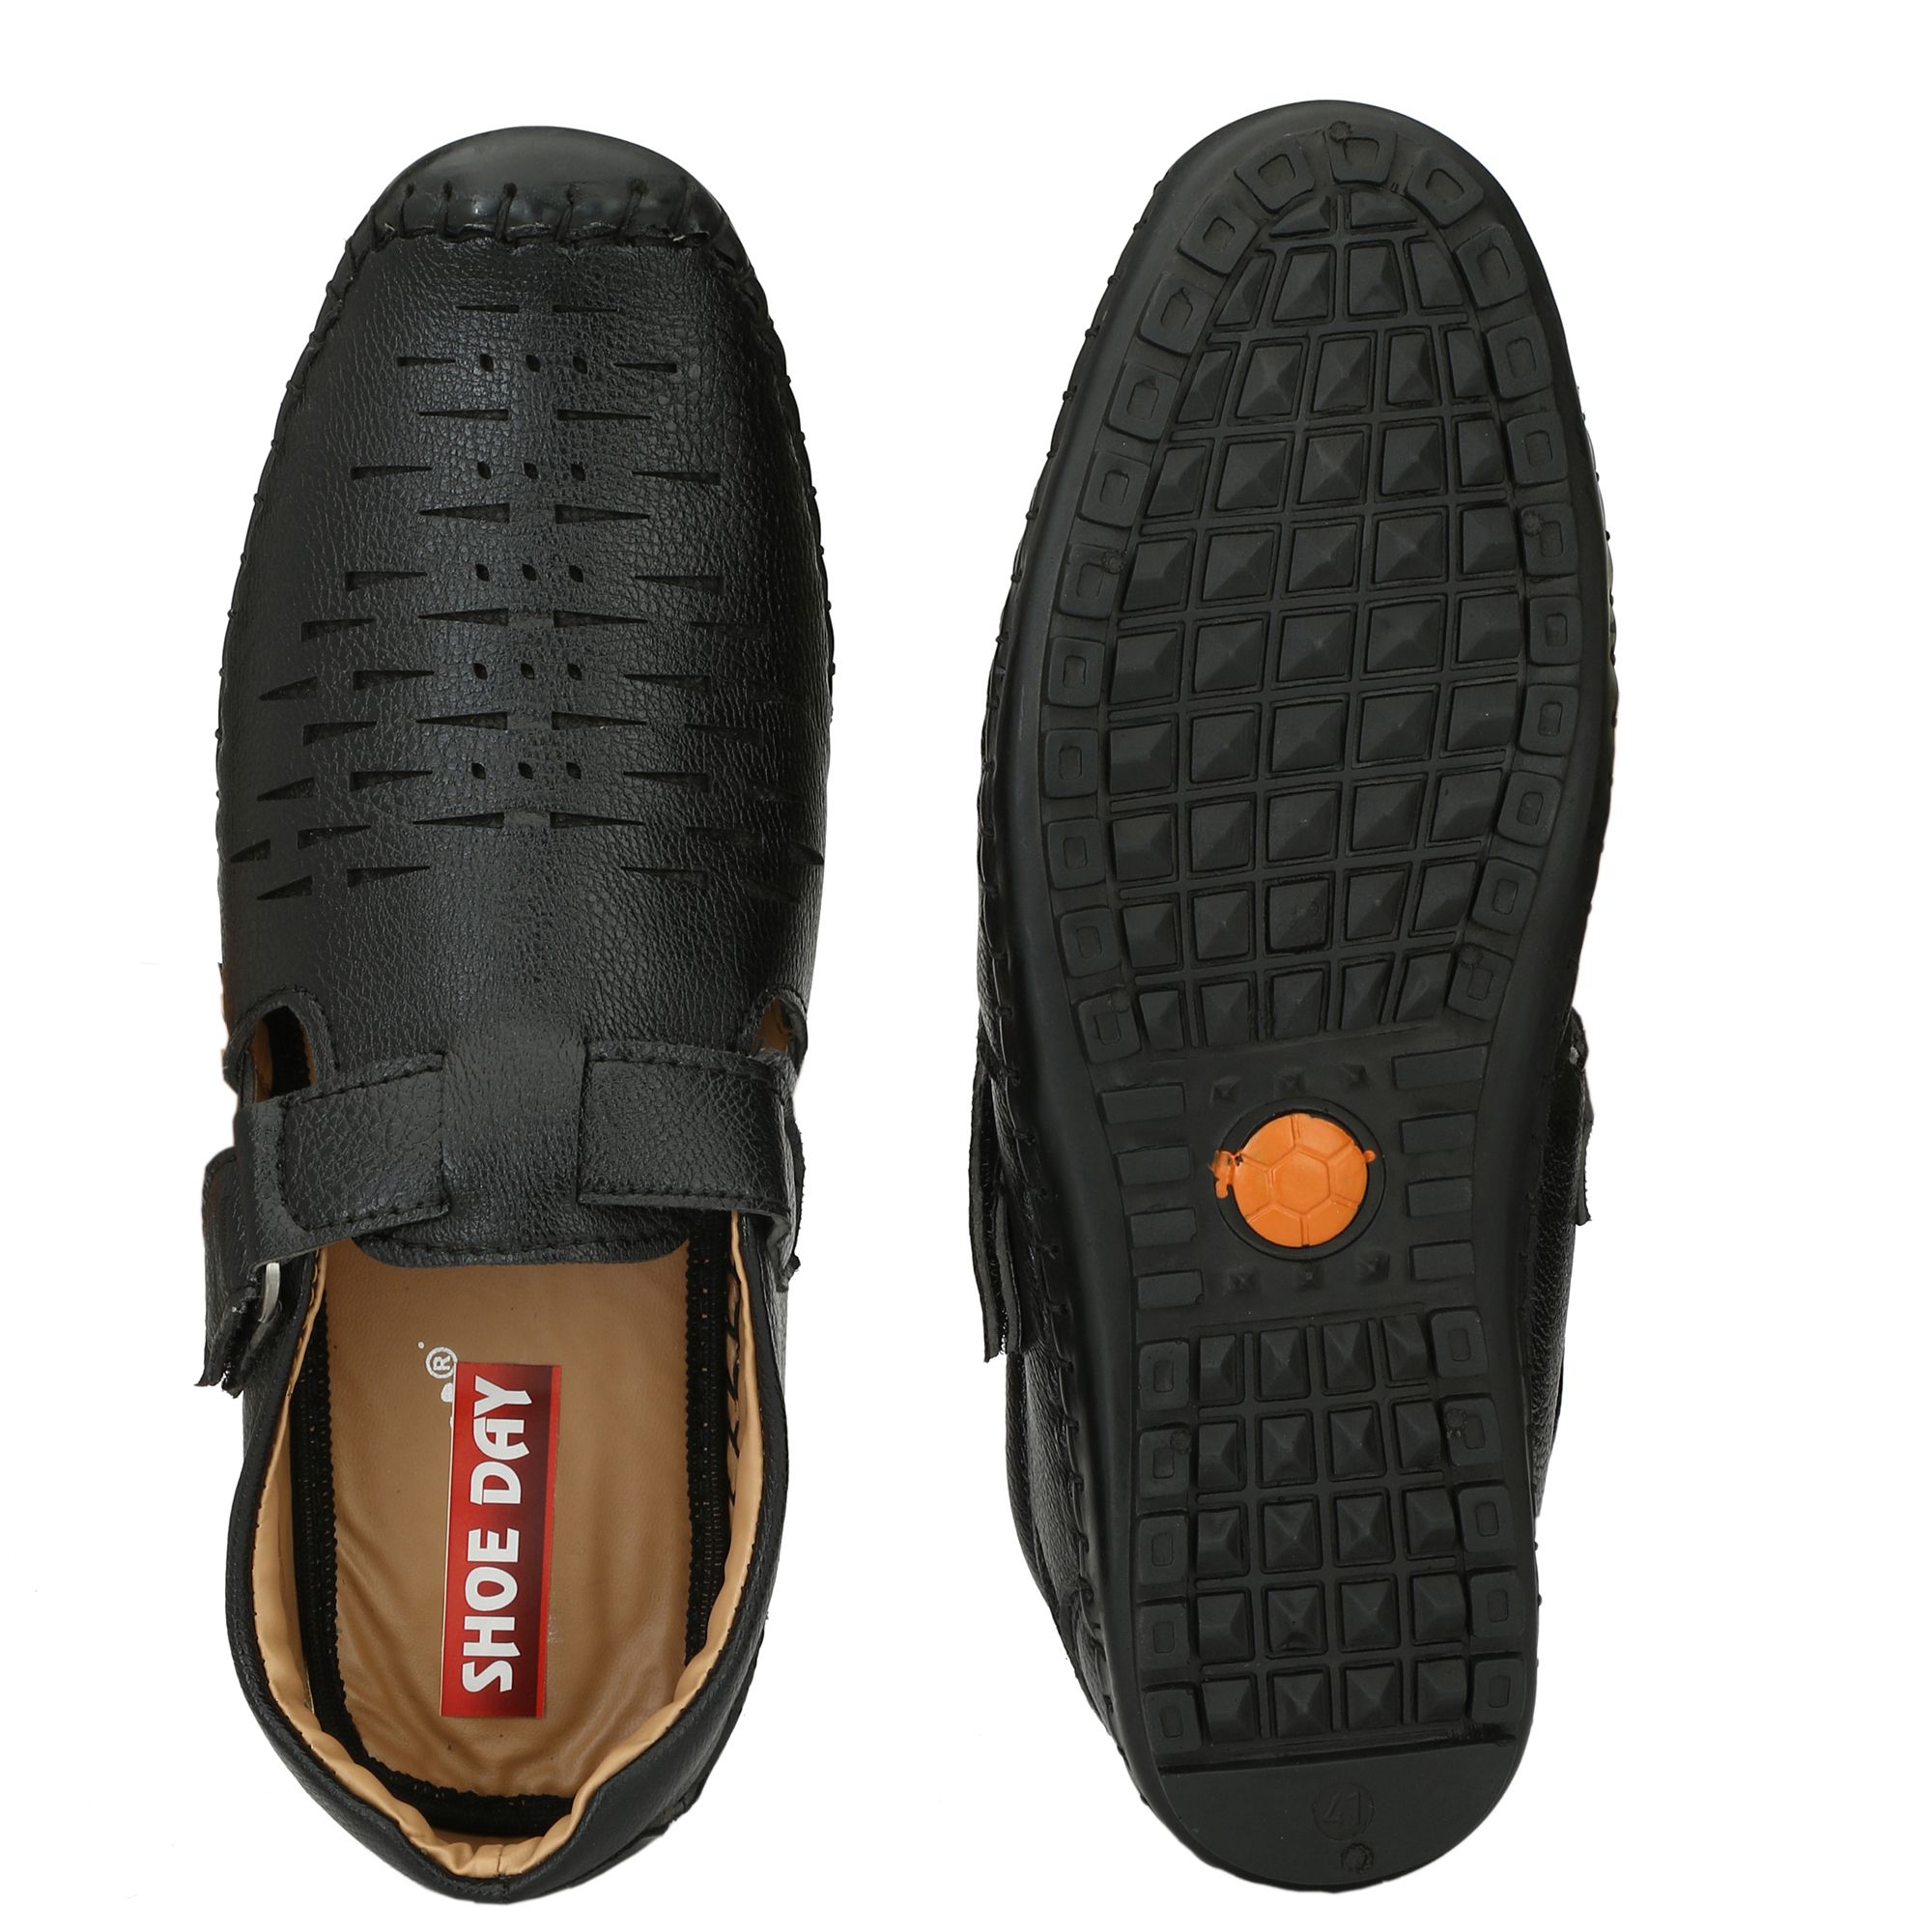 Shoe Day ROMAN Black Sandals - Buy Shoe Day ROMAN Black Sandals Online ...